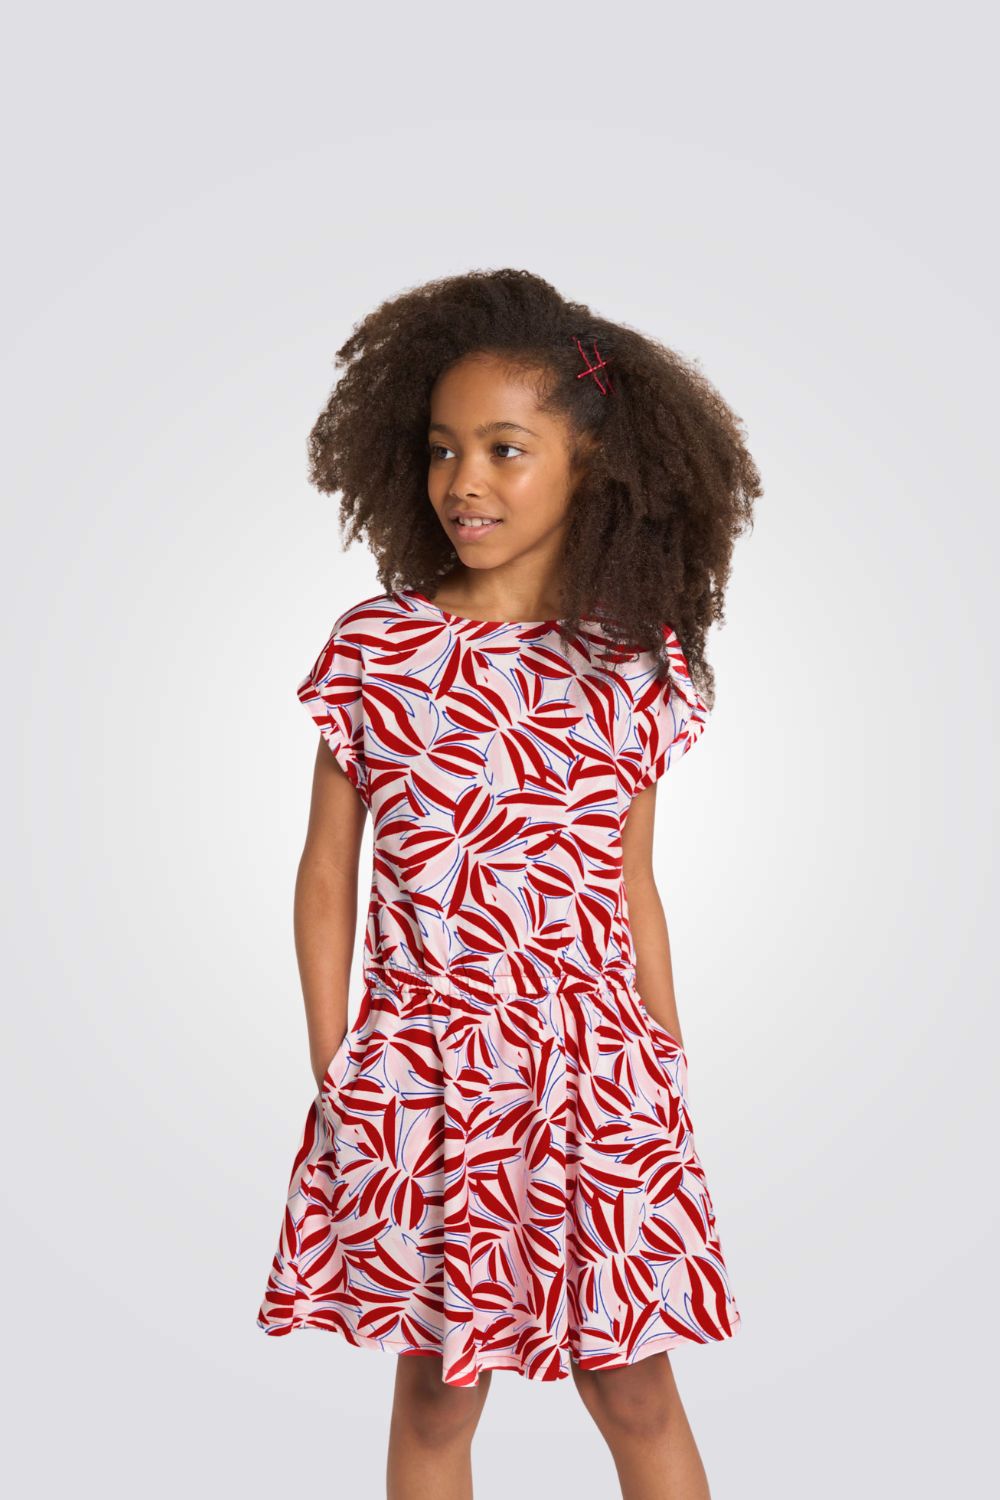 שמלה לילדות עם הדפס באדום